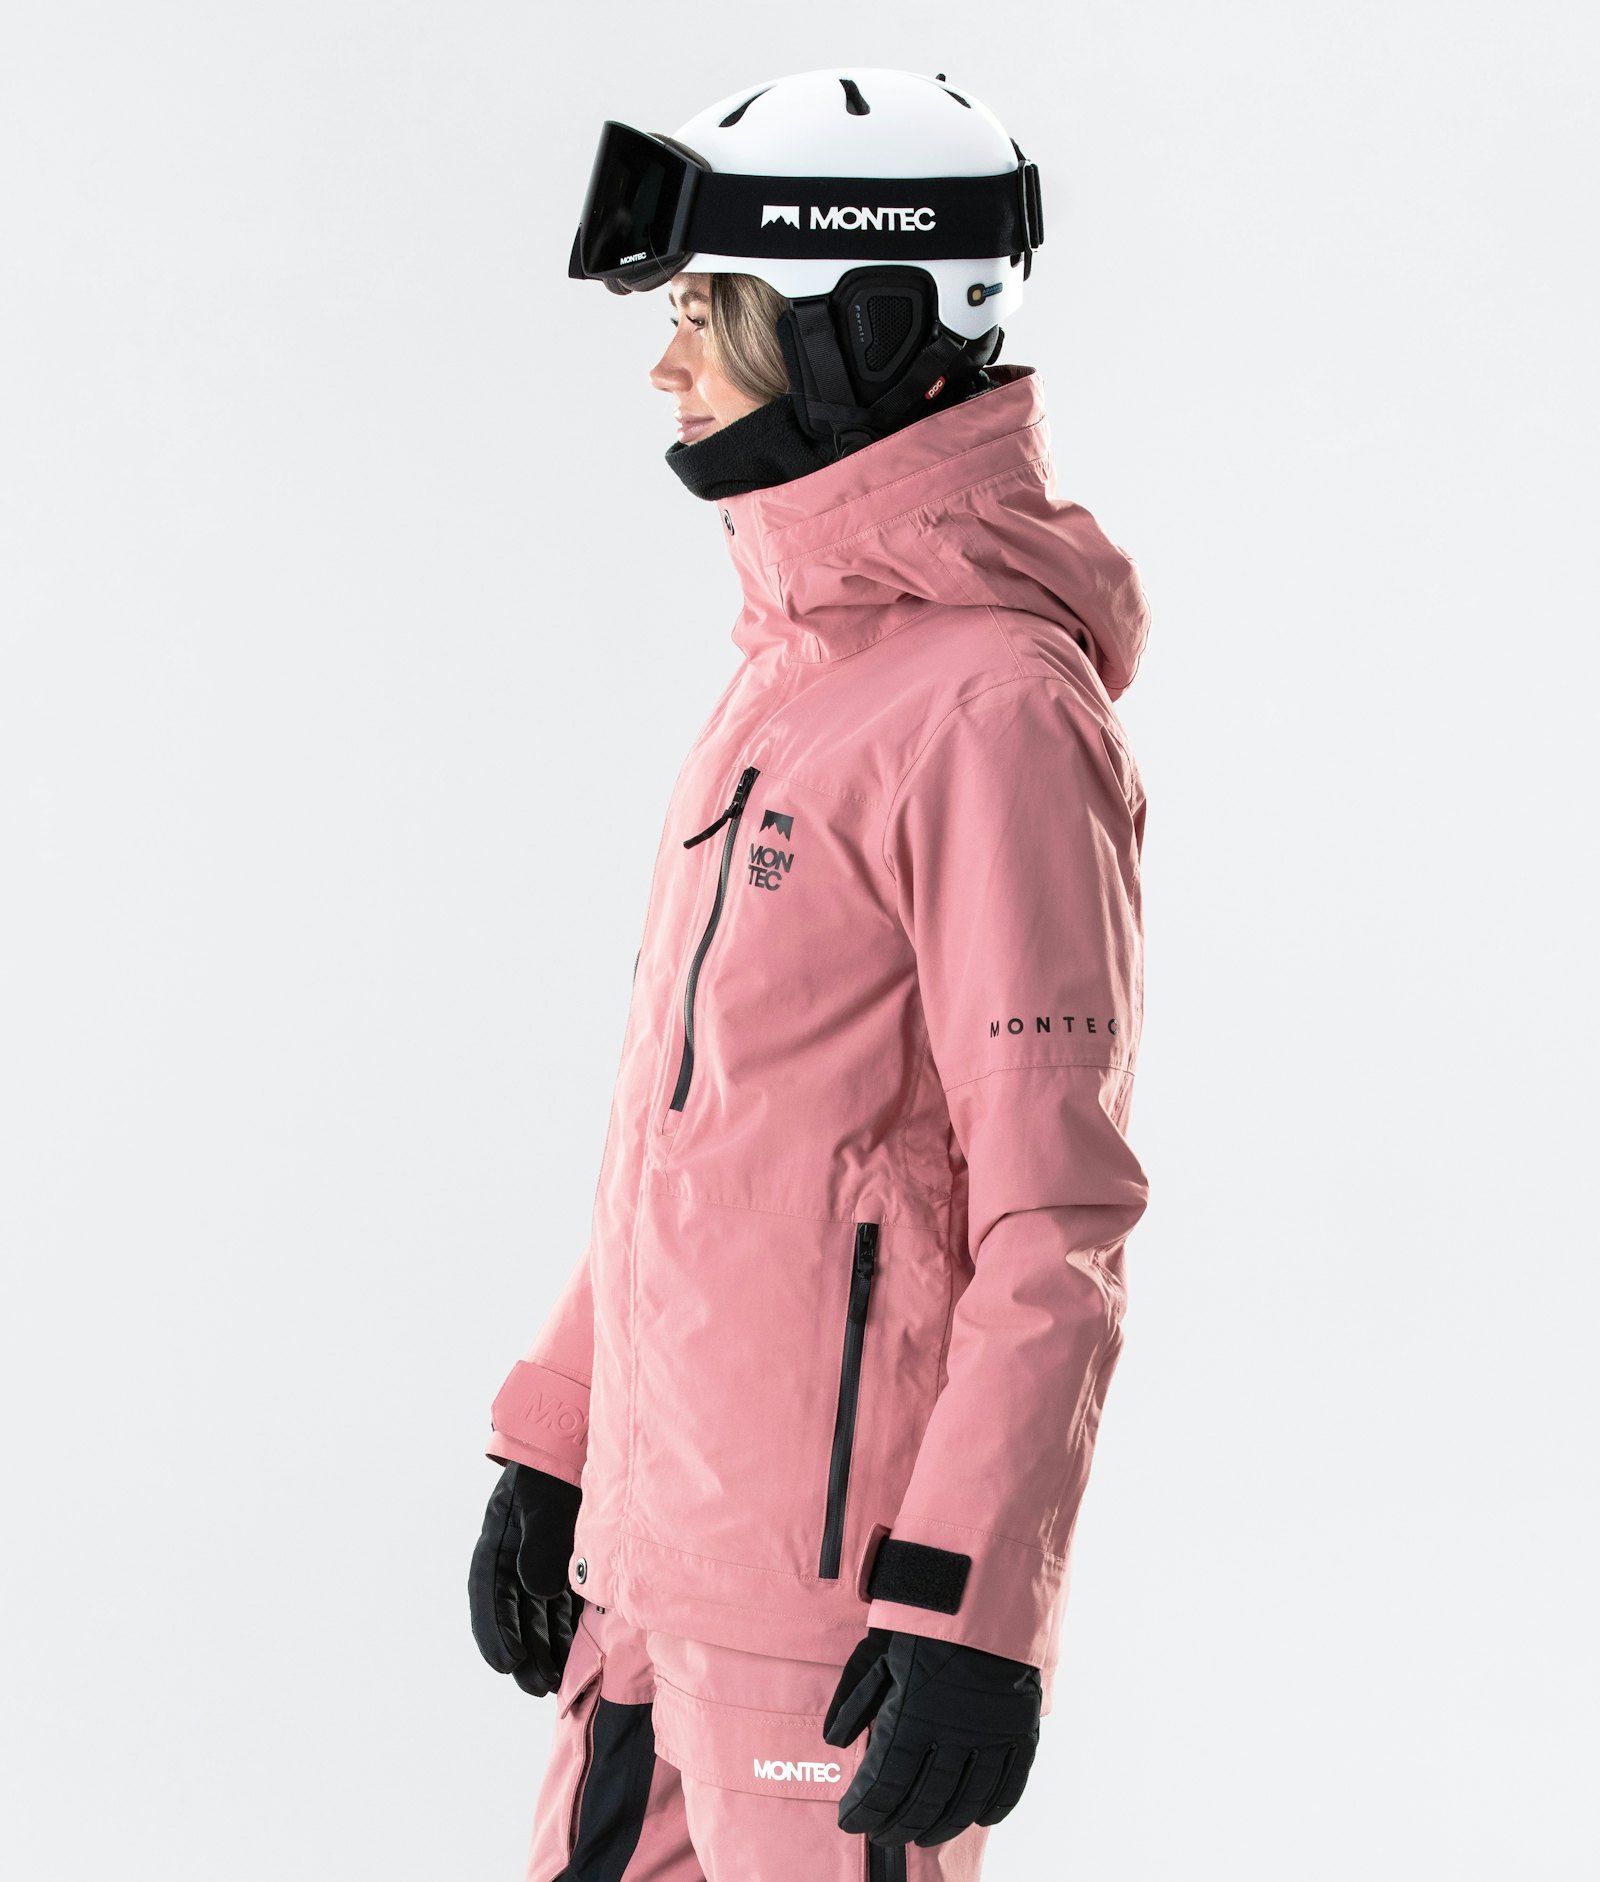 Fawk W 2020 Skijacke Damen Pink